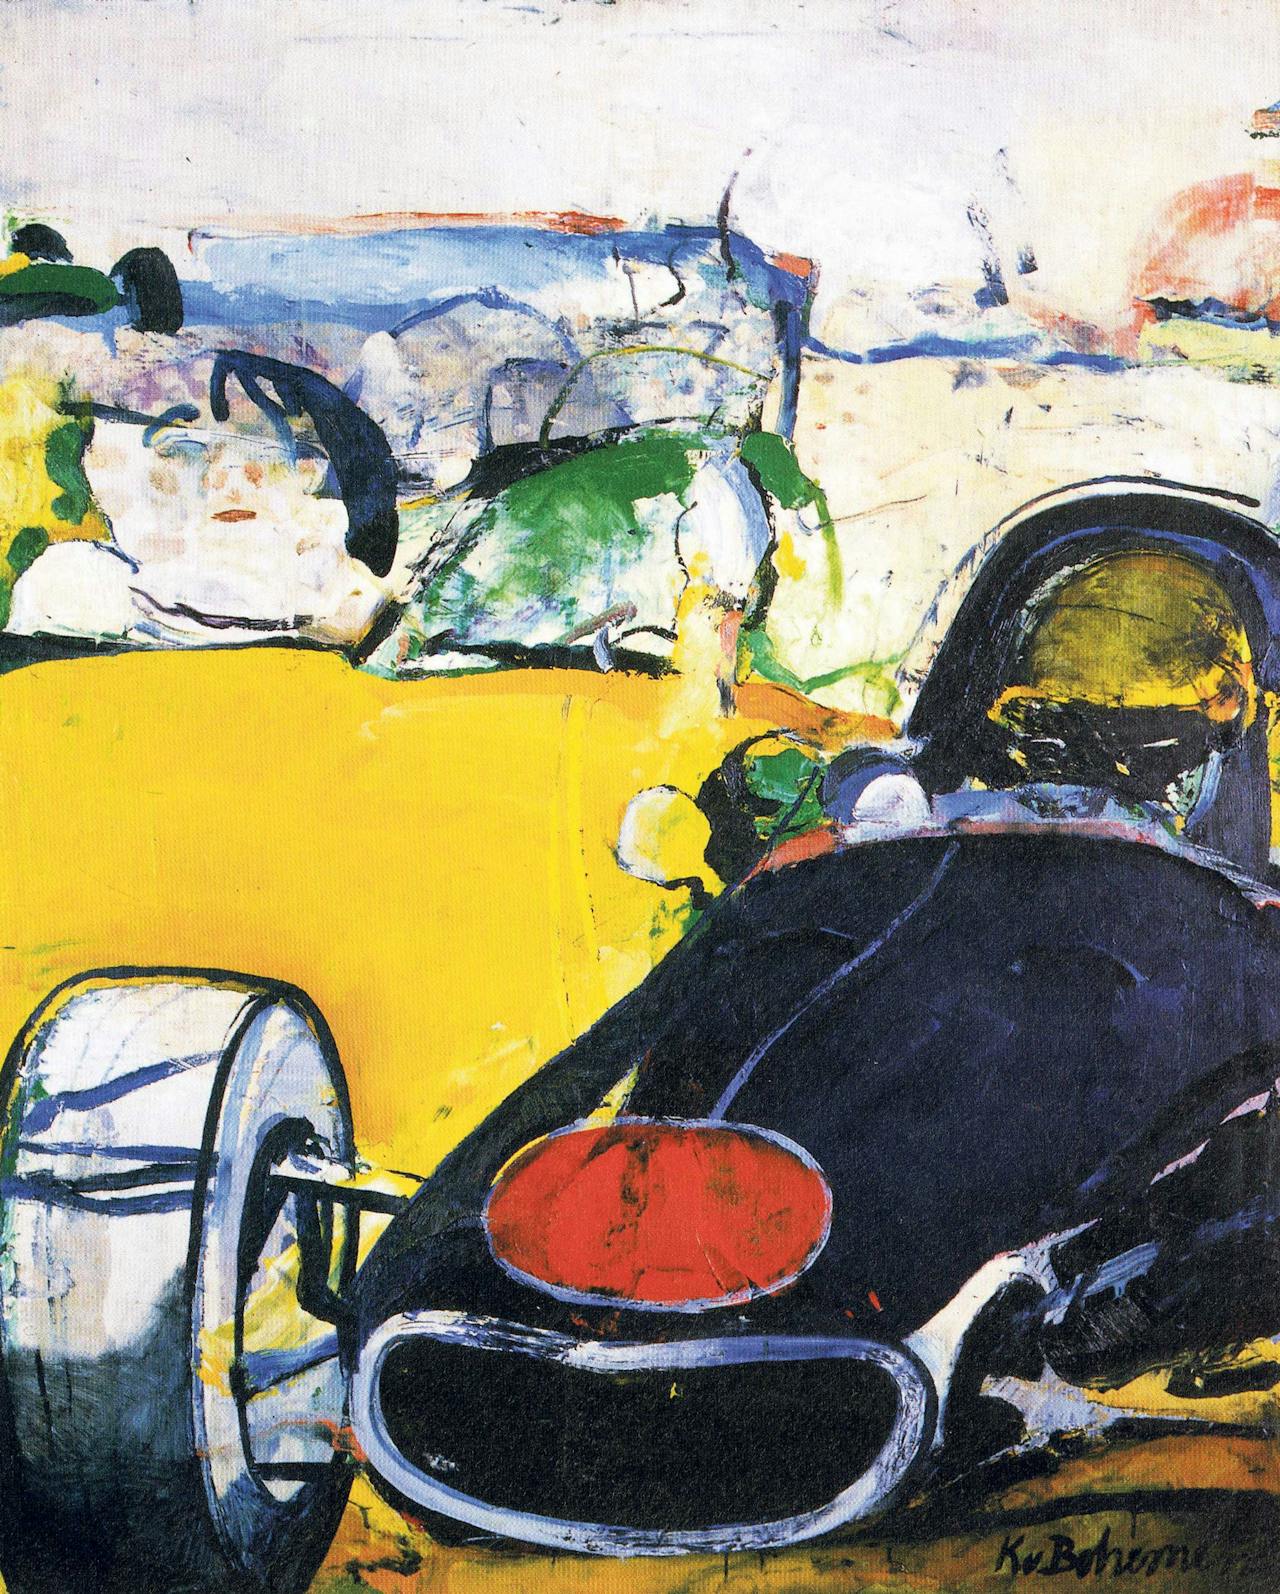 Kees van Bohemen, 'Monaco' (1967), dit is een ander schilderij uit de serie waartoe ook Formula 1 behoort die onderdeel is van de geveilde Imtech-collectie.